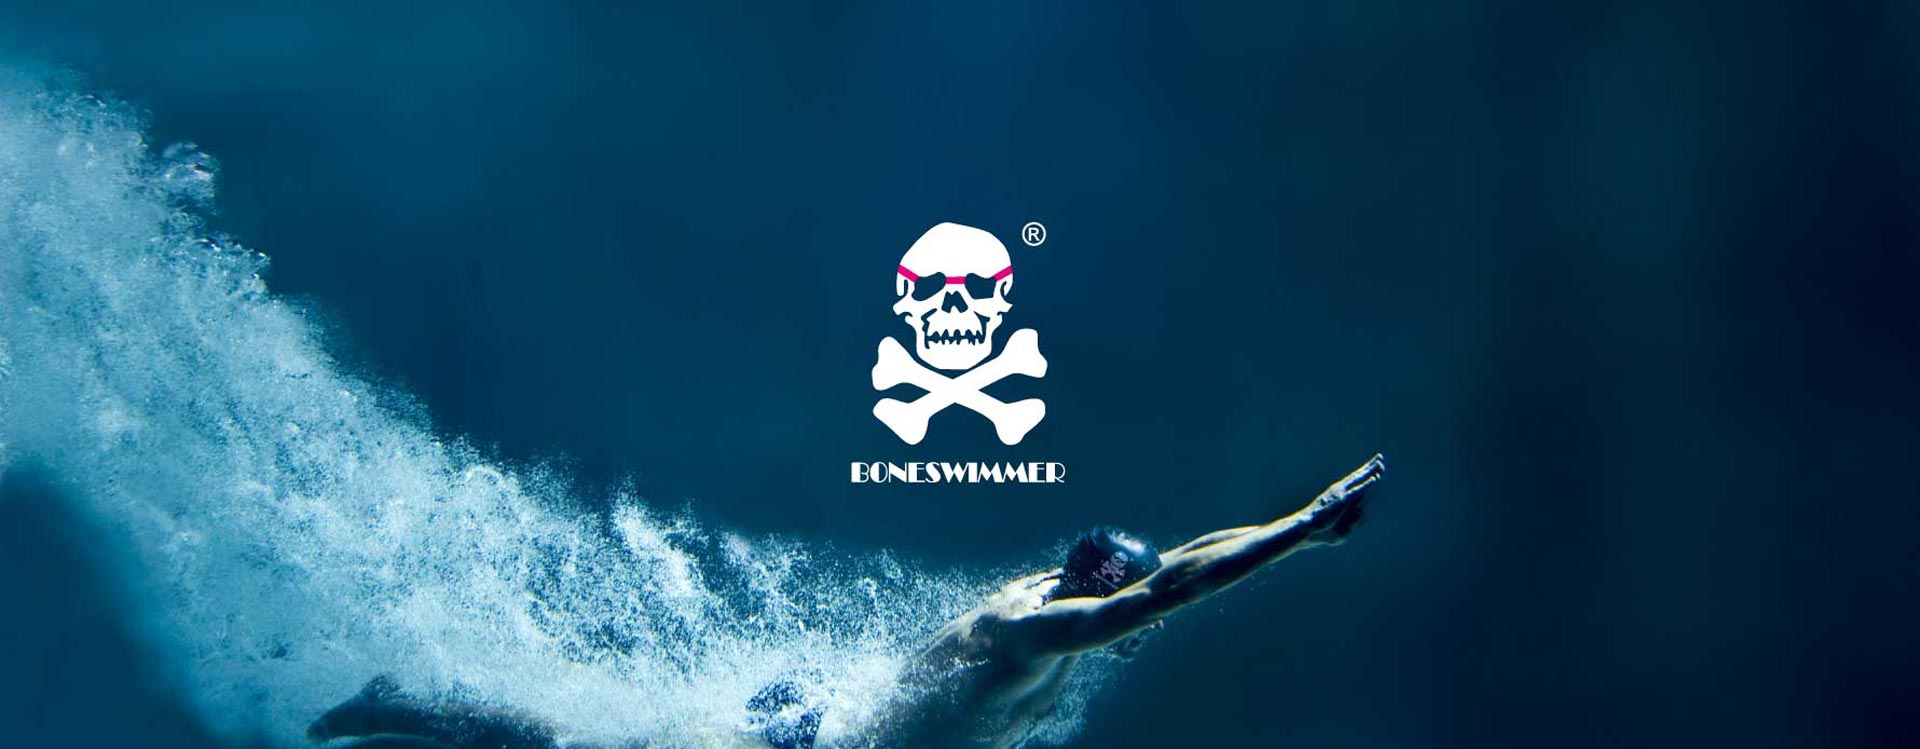 Boneswimmer ecommerce abbigliamento sportivo social media marketing - Case history Unique